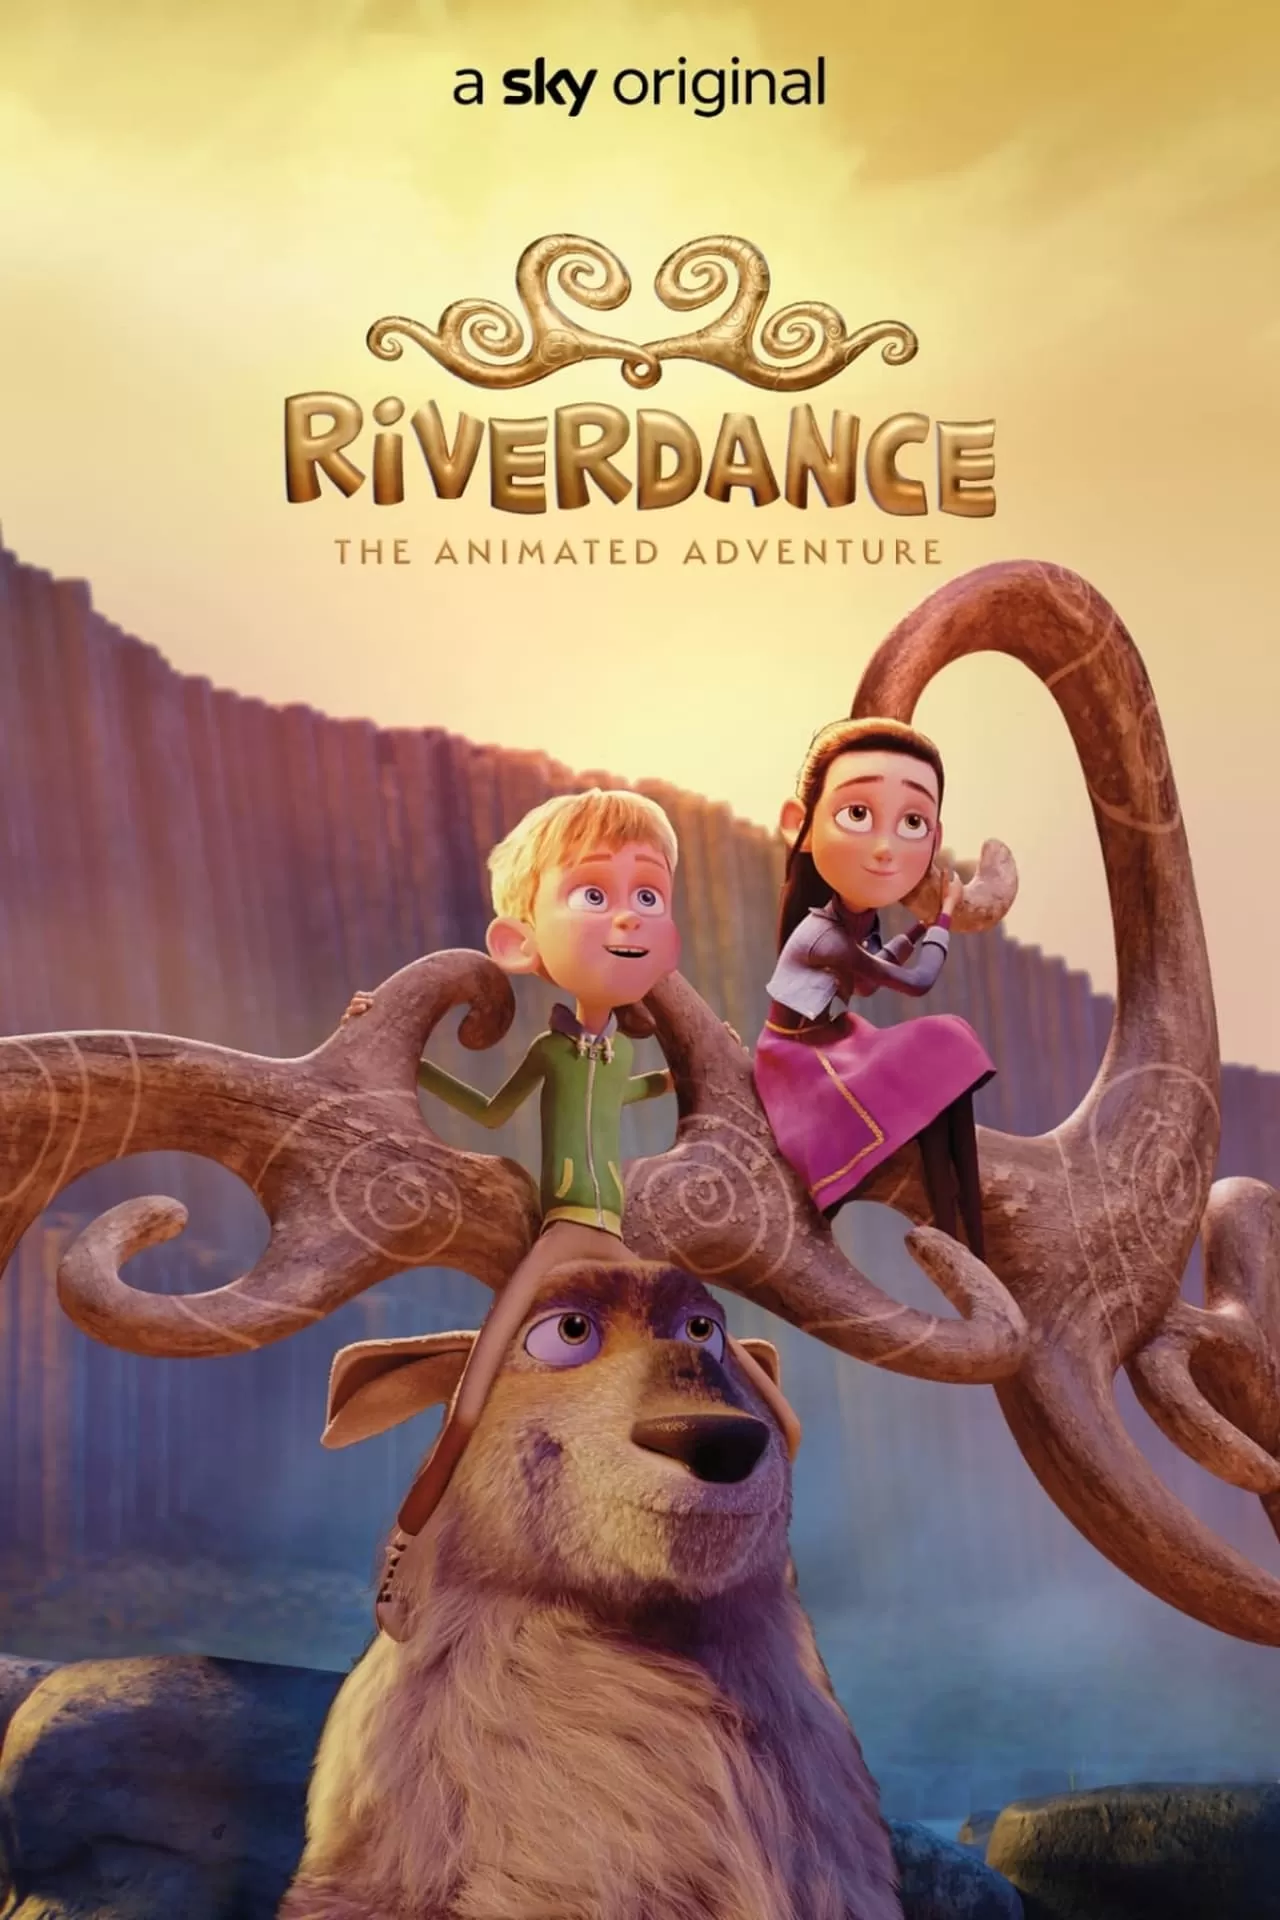 Riverdance The Animated Adventure ผจญภัยริเวอร์แดนซ์